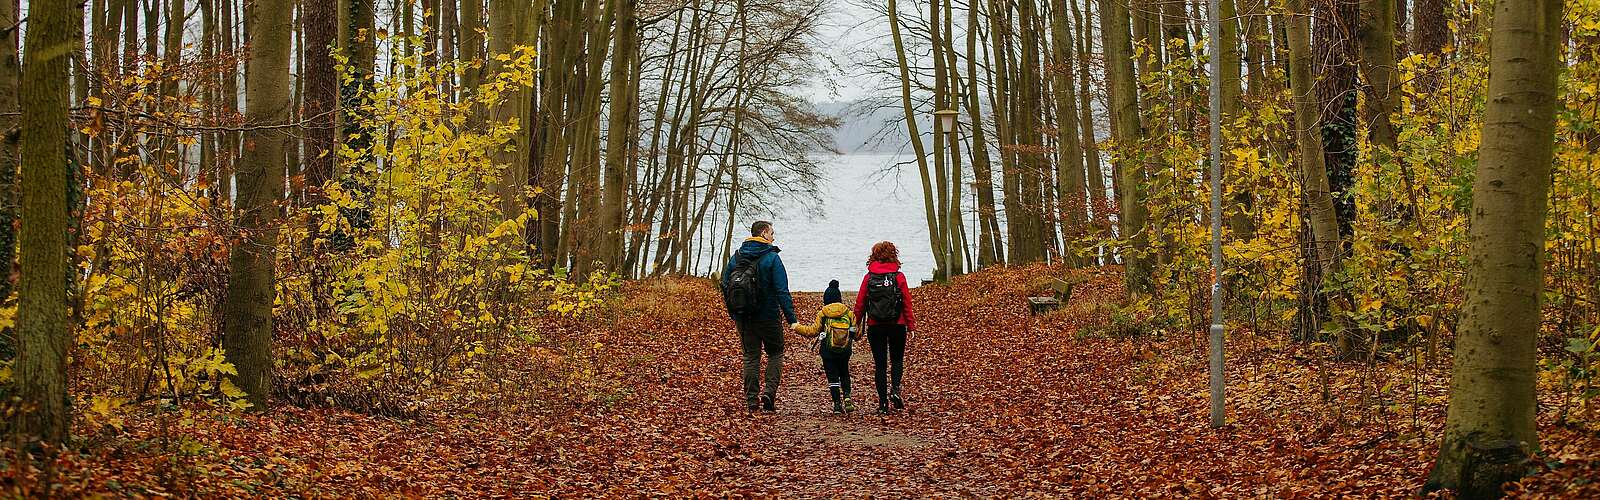 &amp;lt;p&amp;gt;Eine Familie aus Vater, Mutter und Kind wandert durch einen herbstlichen Wald&amp;lt;/p&amp;gt;,
    

        Foto: Tourismusverband Ruppiner Seenland e.V./Julia Nimke